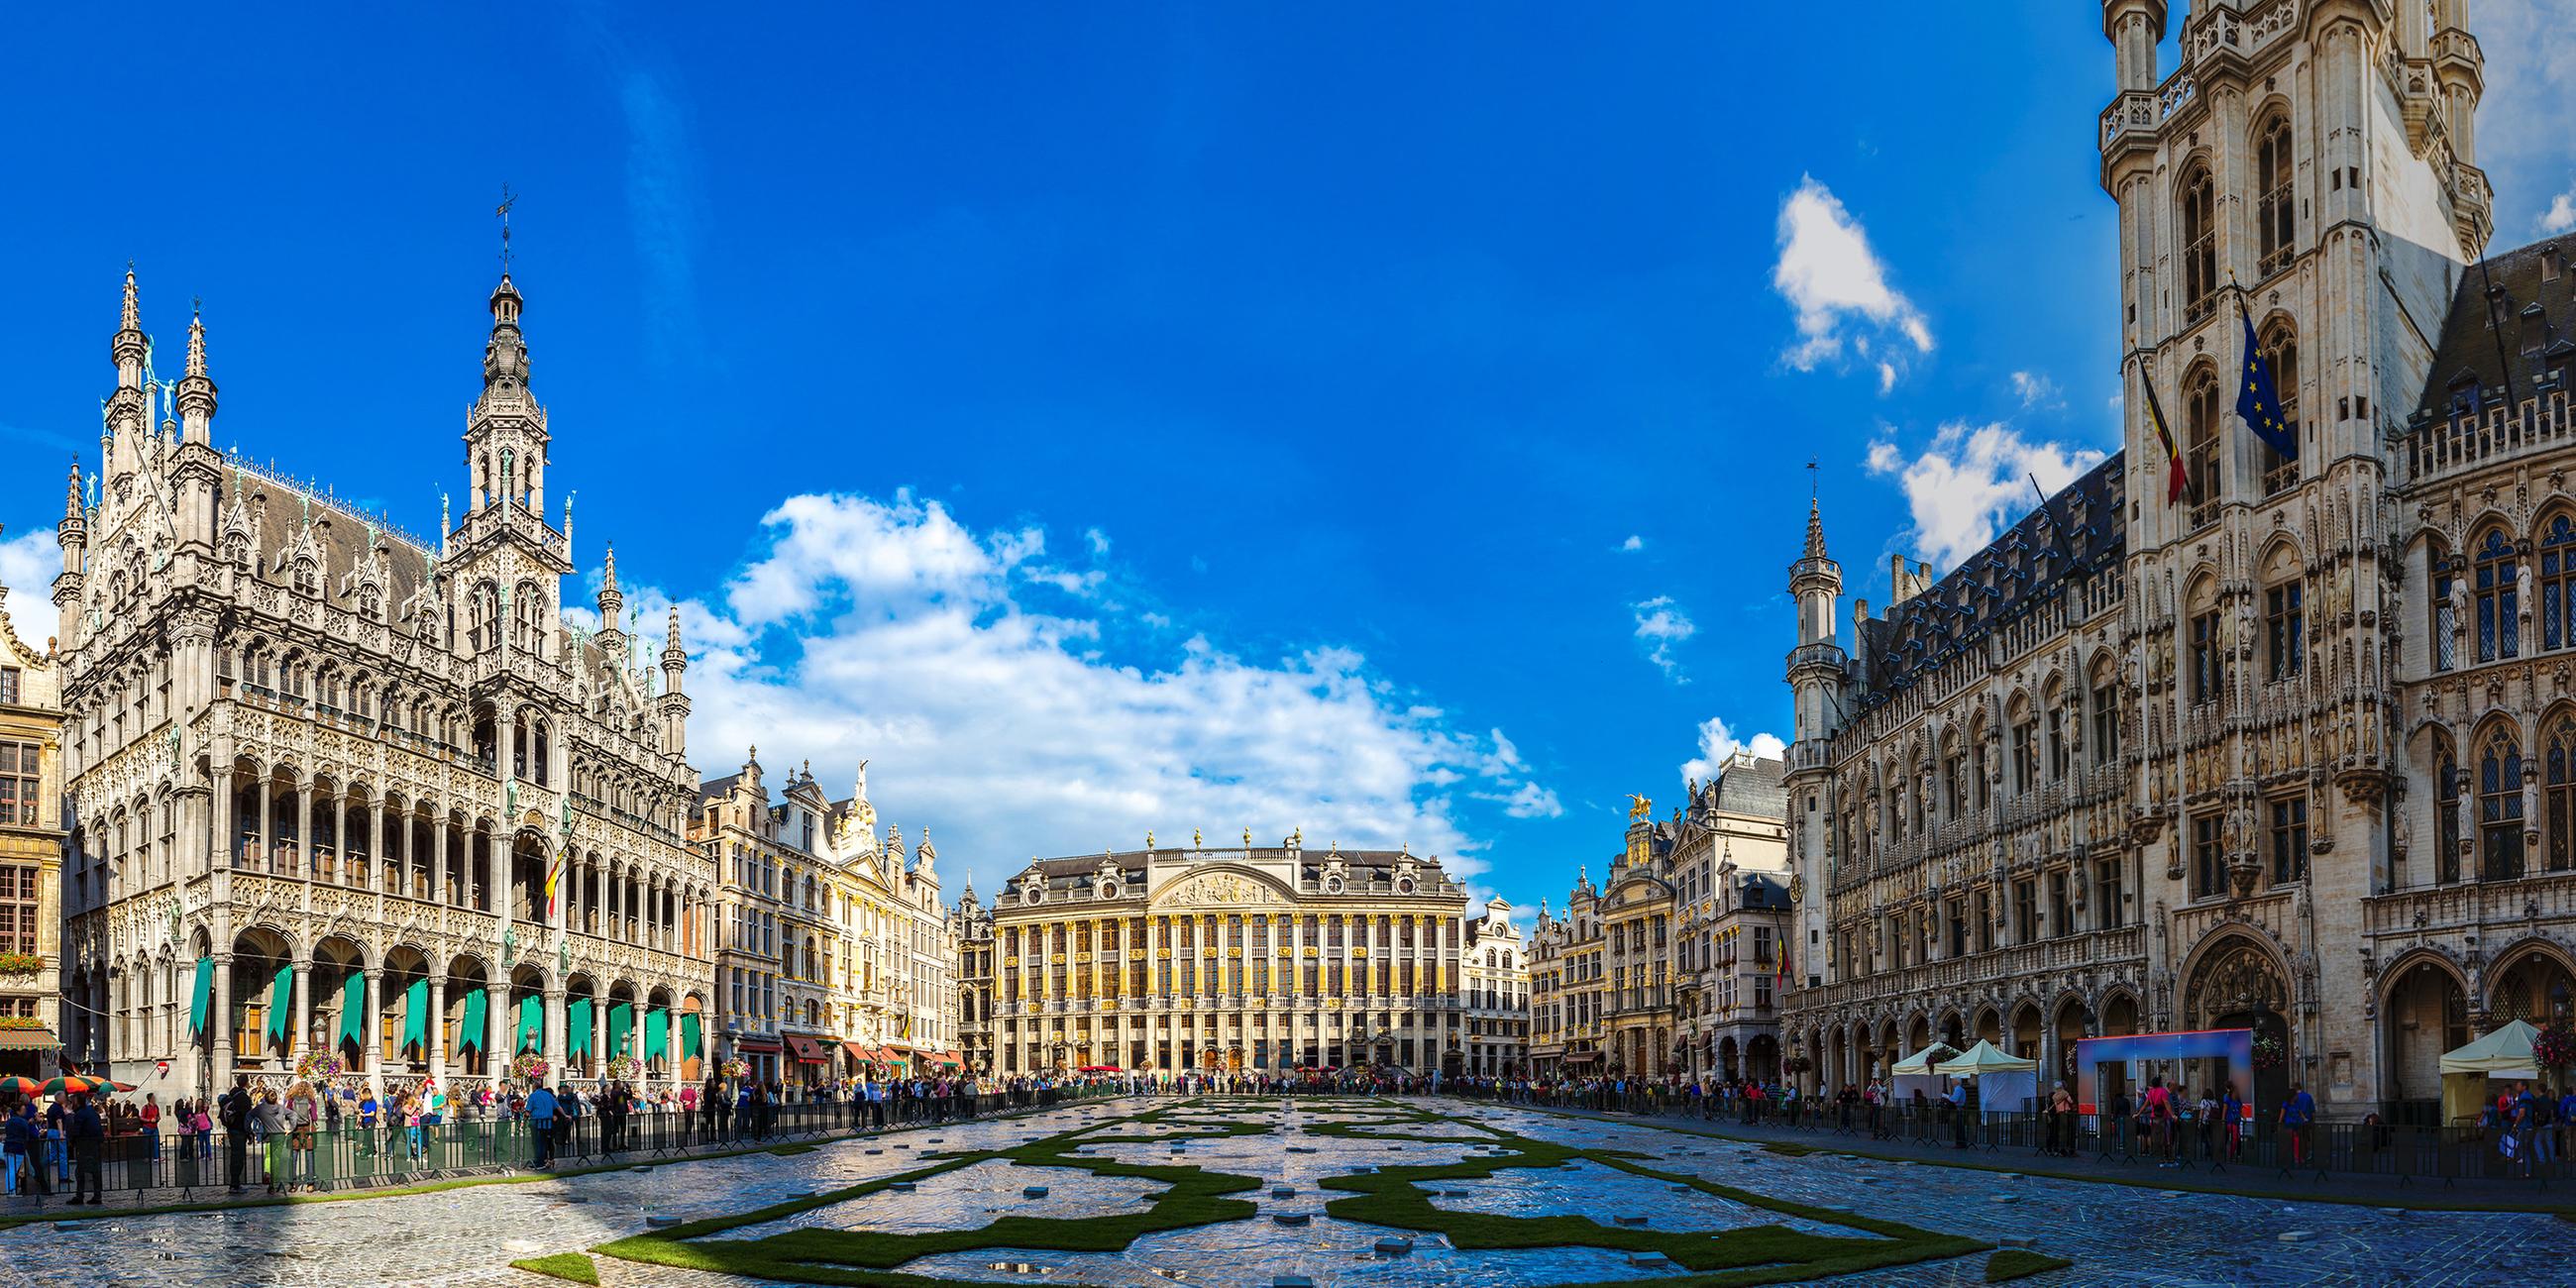 Der Grand Place in Brüssel, Belgien, an einem sonnigen Sommertag.